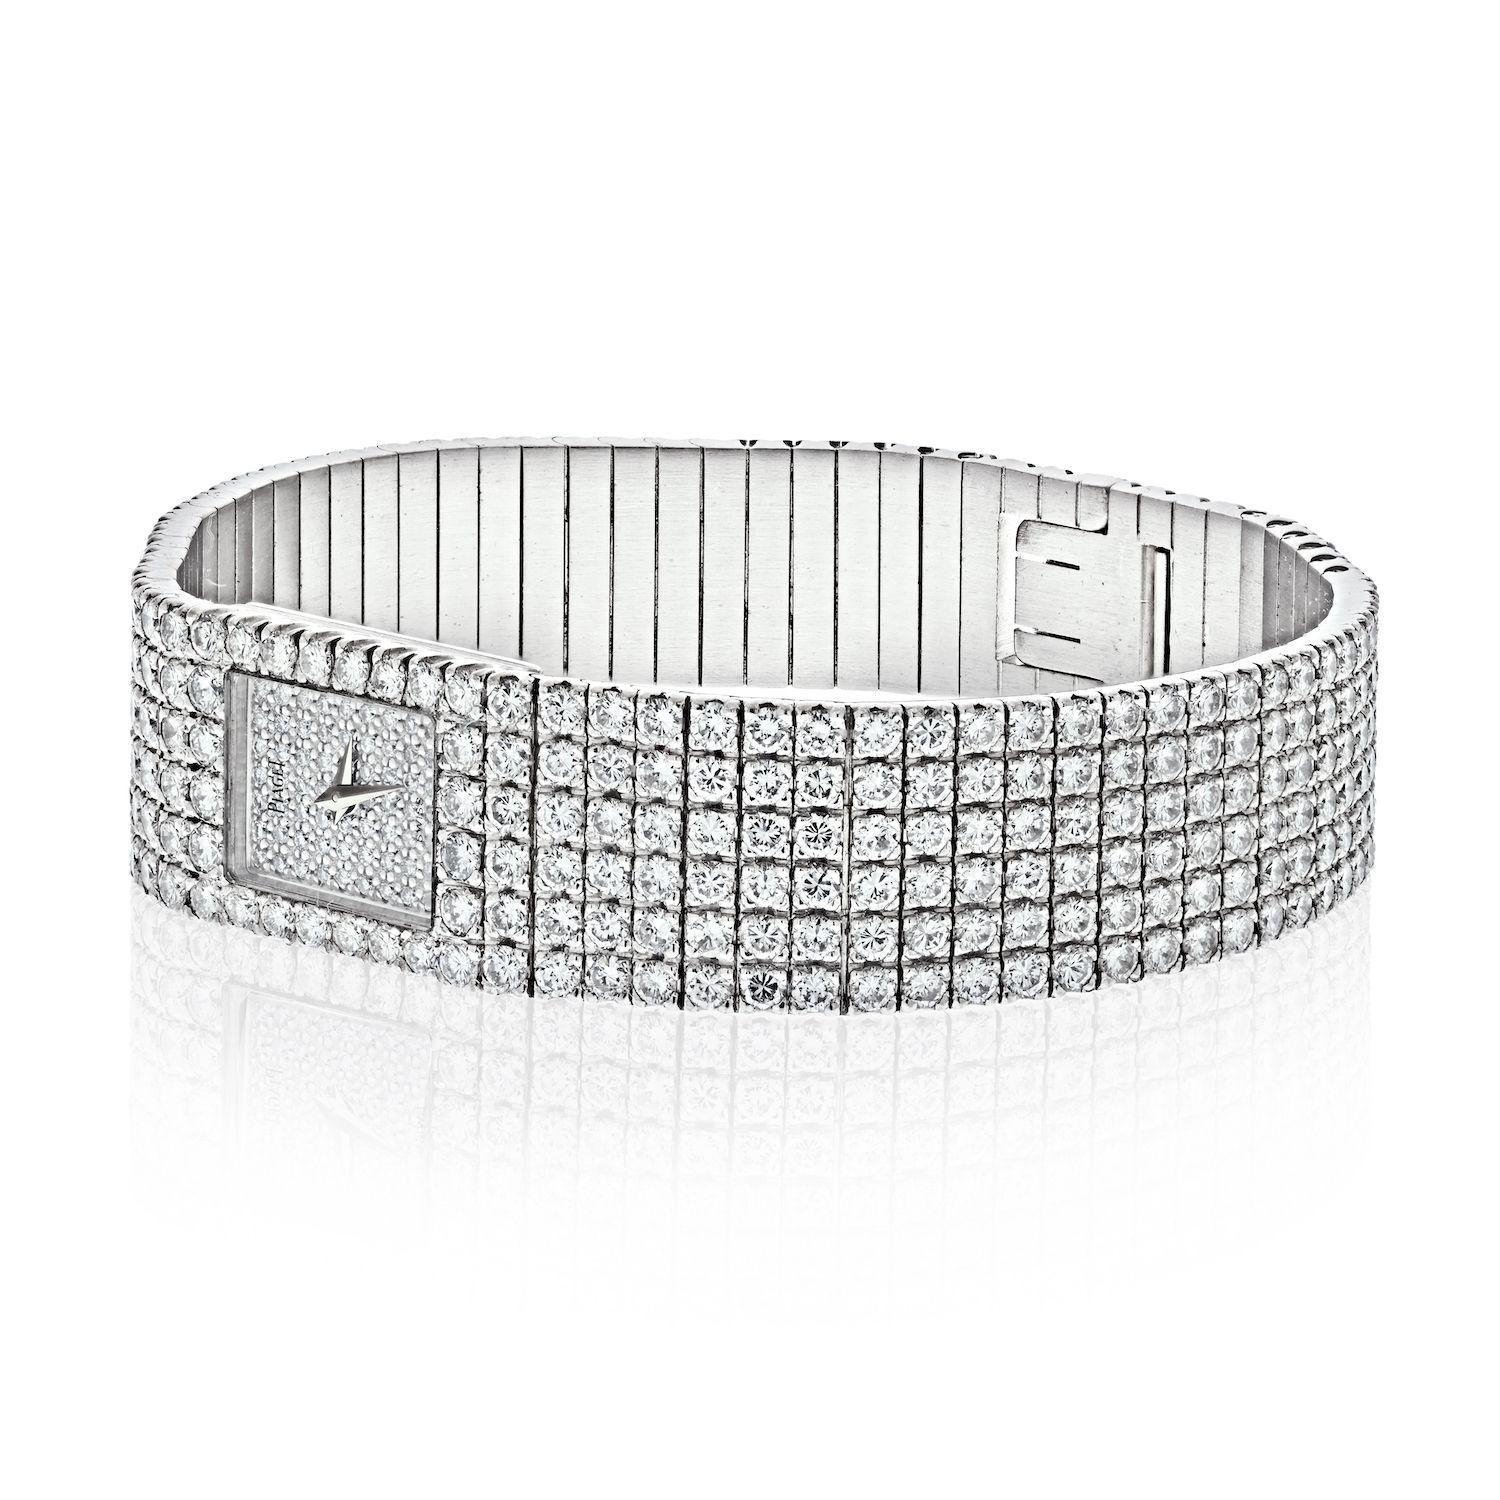 Diese Piaget POLO Diamantuhr aus dem 21. Jahrhundert in makellosem Zustand ist das perfekte Glamour-Stück.
Mit allen originalen, werkseitig gefassten Diamanten, ca. 20,00 Karat, E-F, Farbe VVS, Reinheit.
Diese Uhr mit Quarzwerk von Piaget besitzt